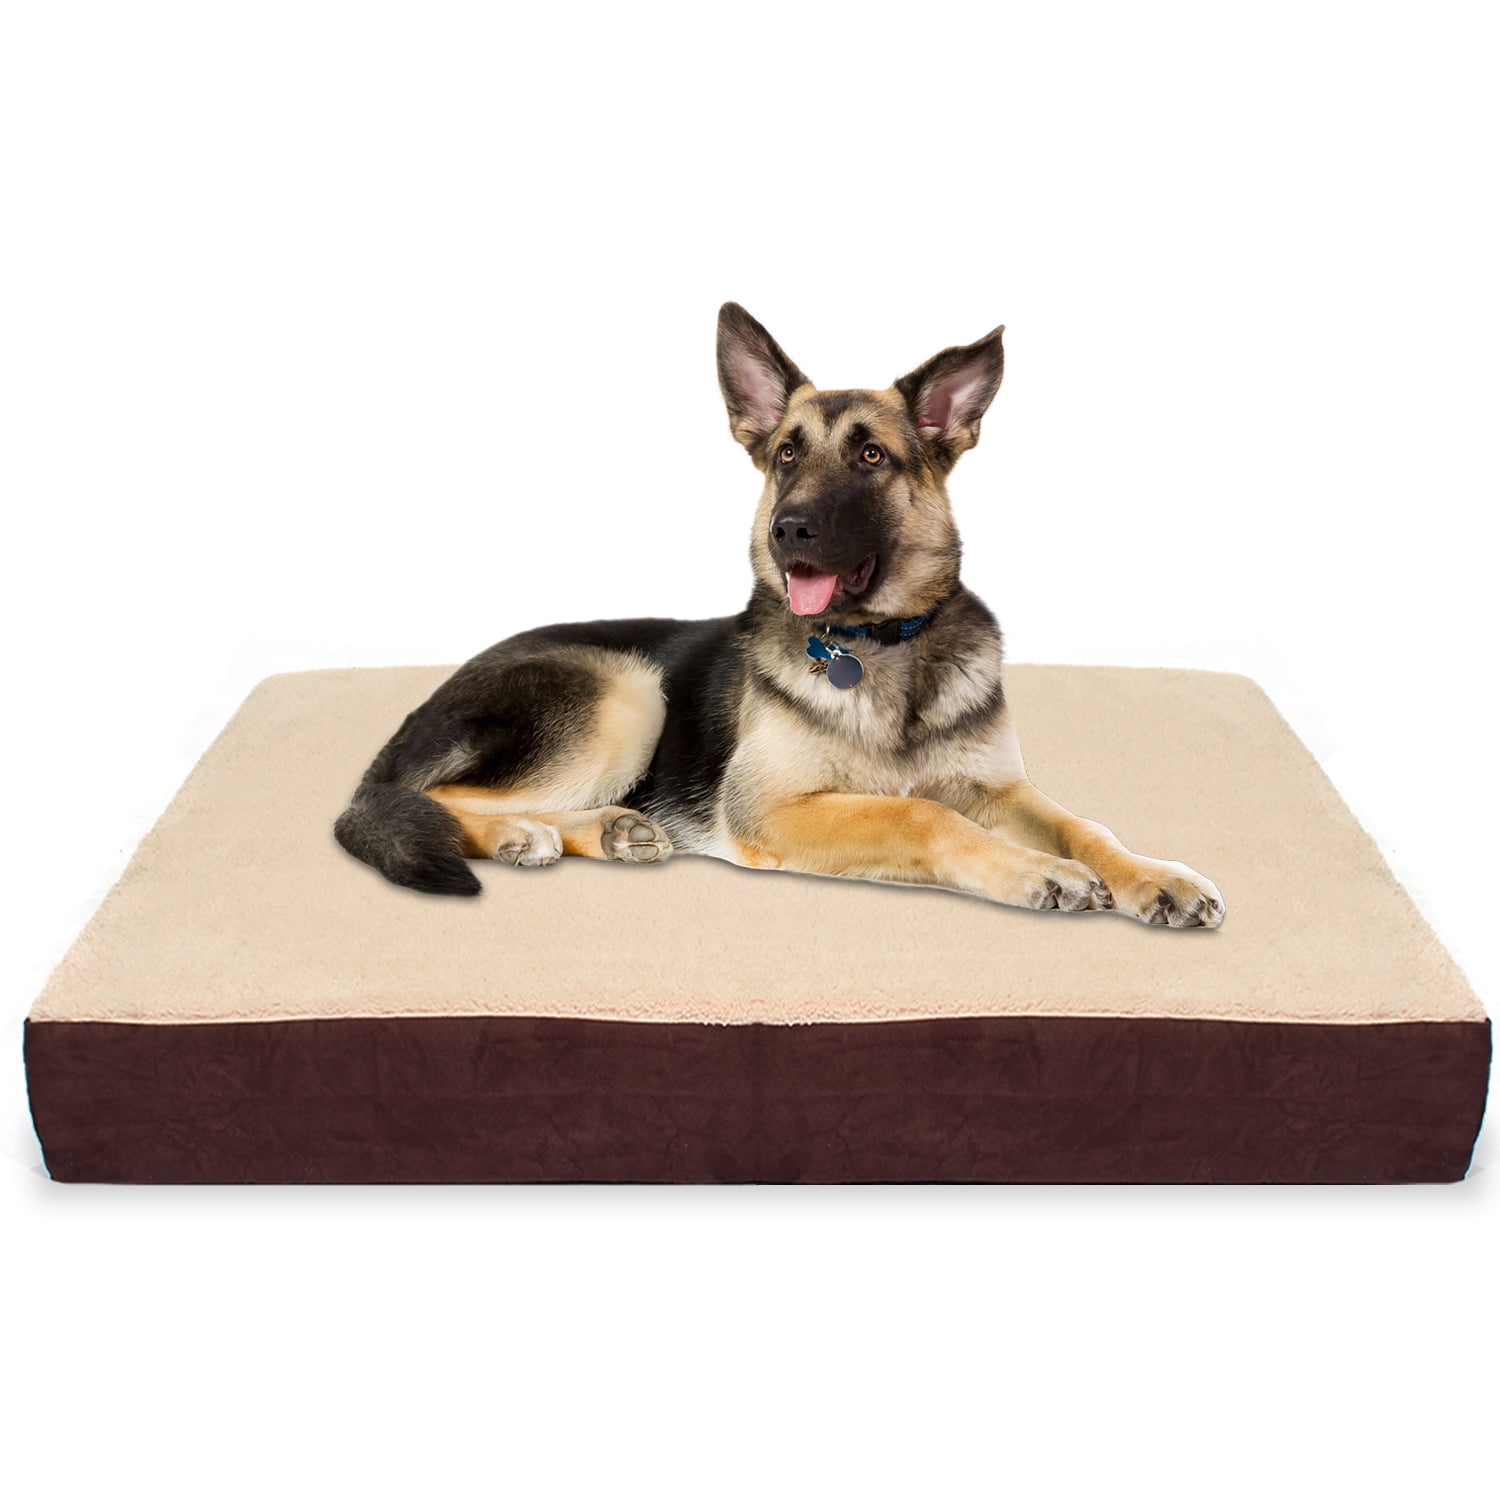 xlarge waterproof dog bed